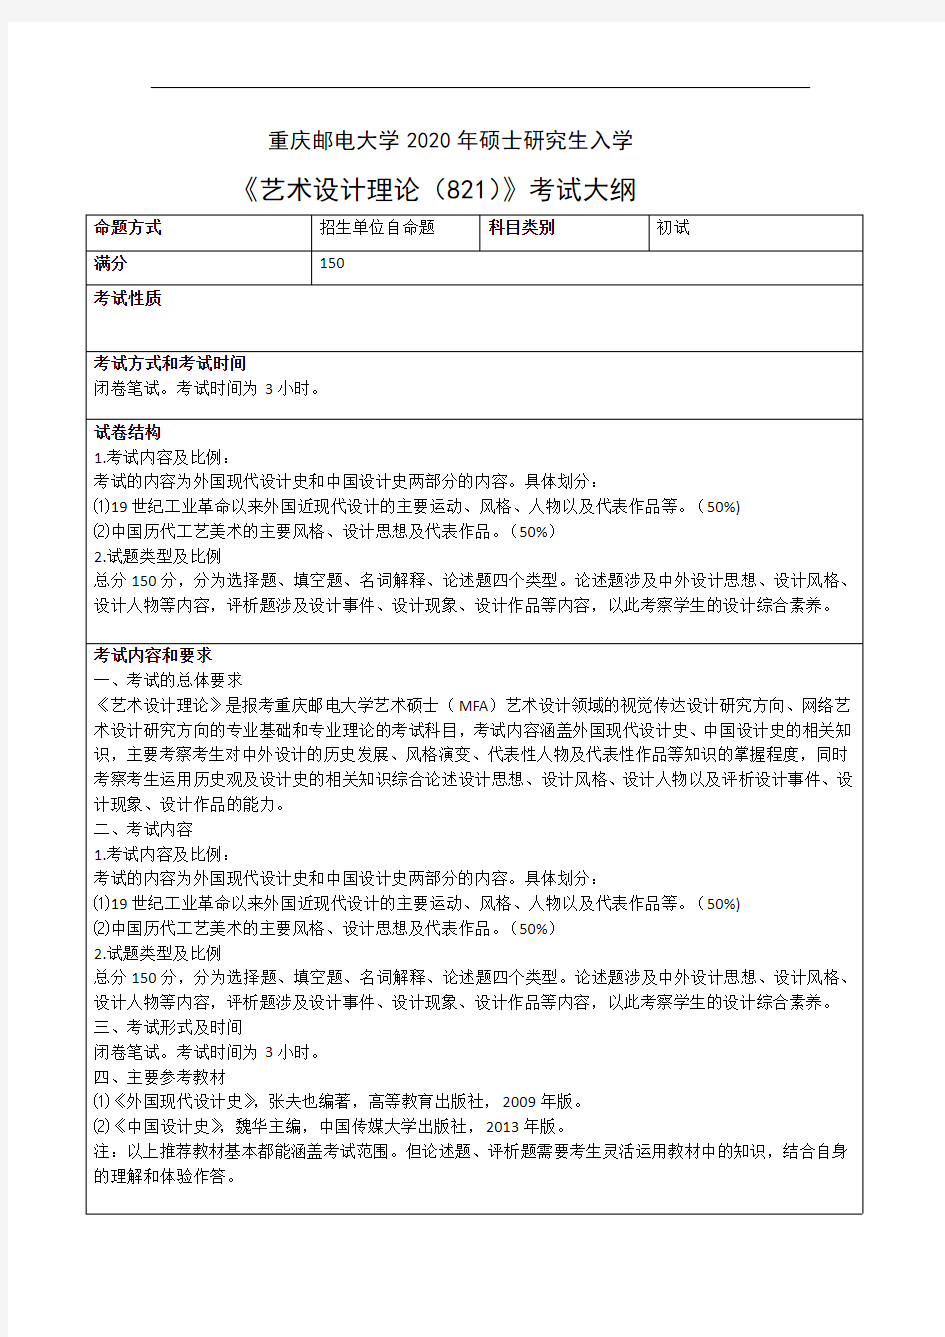 重庆邮电大学821艺术设计理论2020考研专业课初试大纲